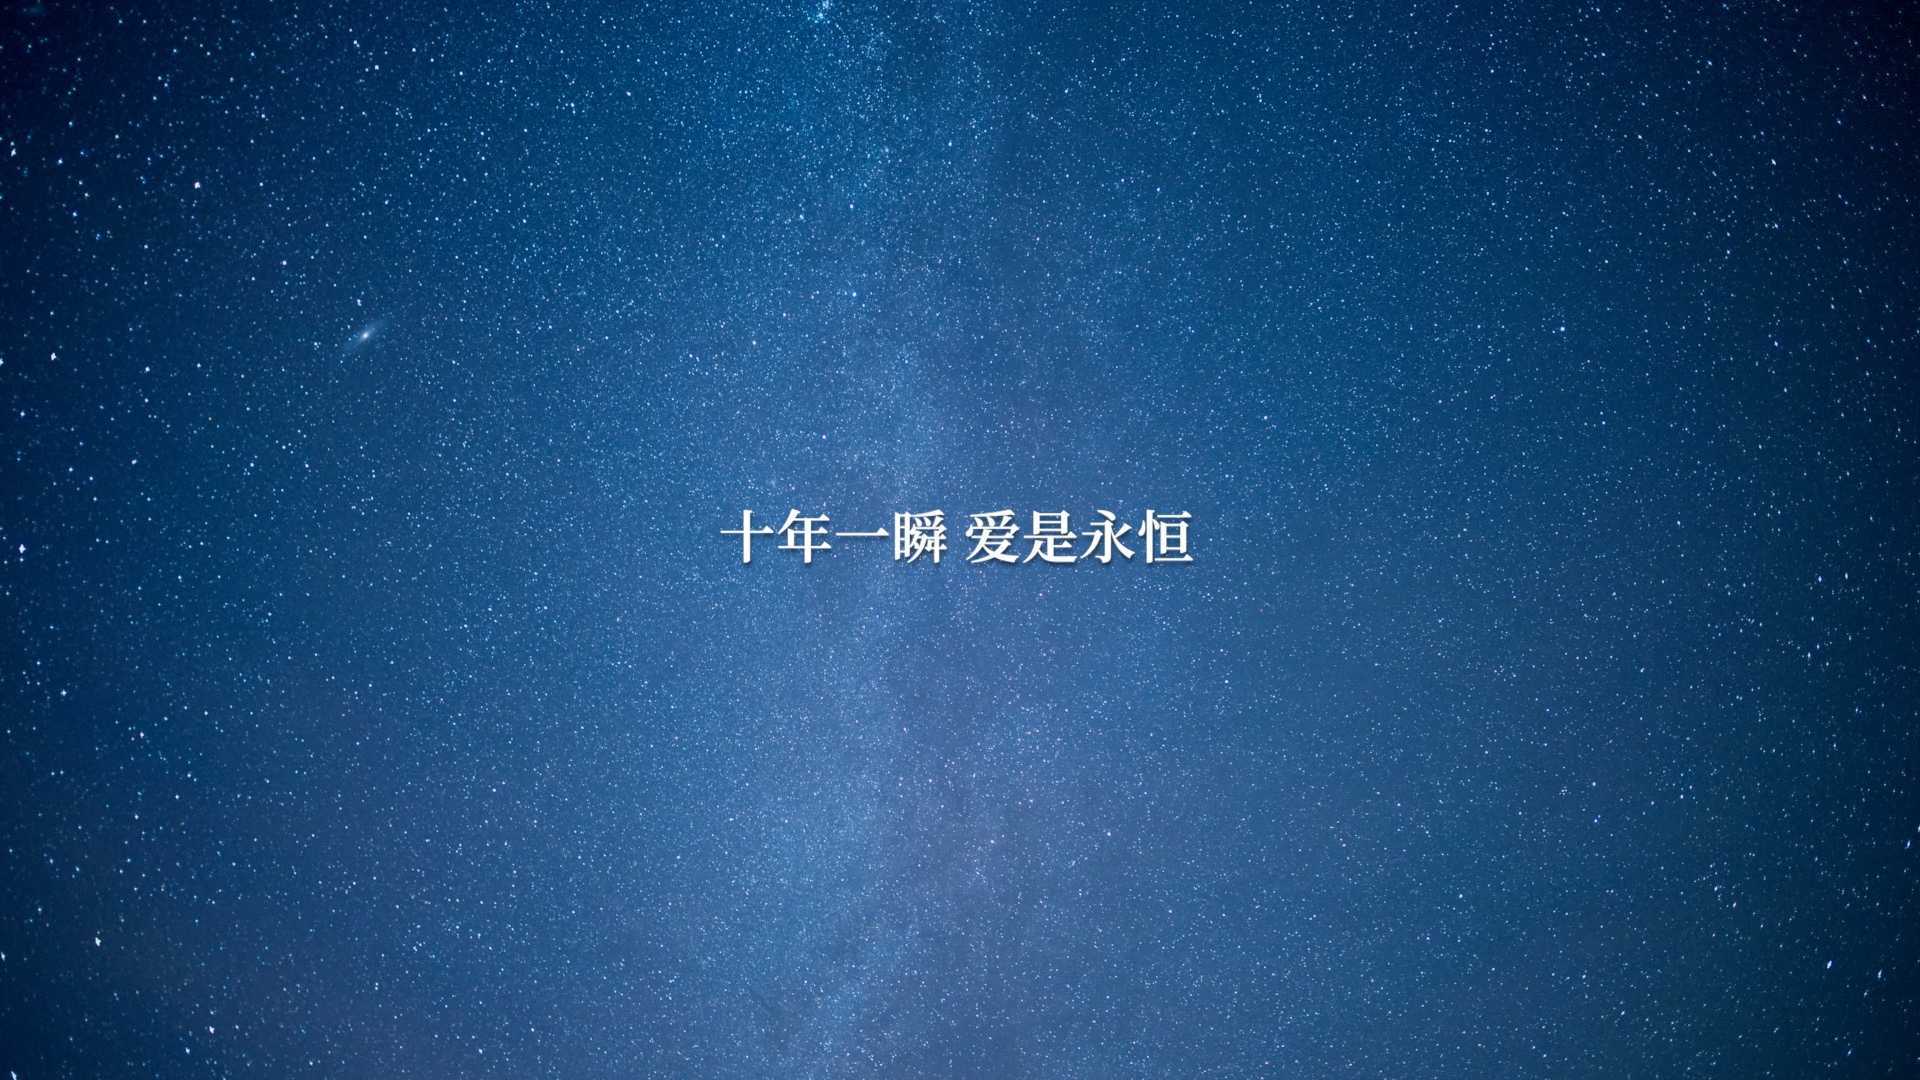 十年一瞬 爱是永恒-2022年搜狐焦点公益基金年终短片